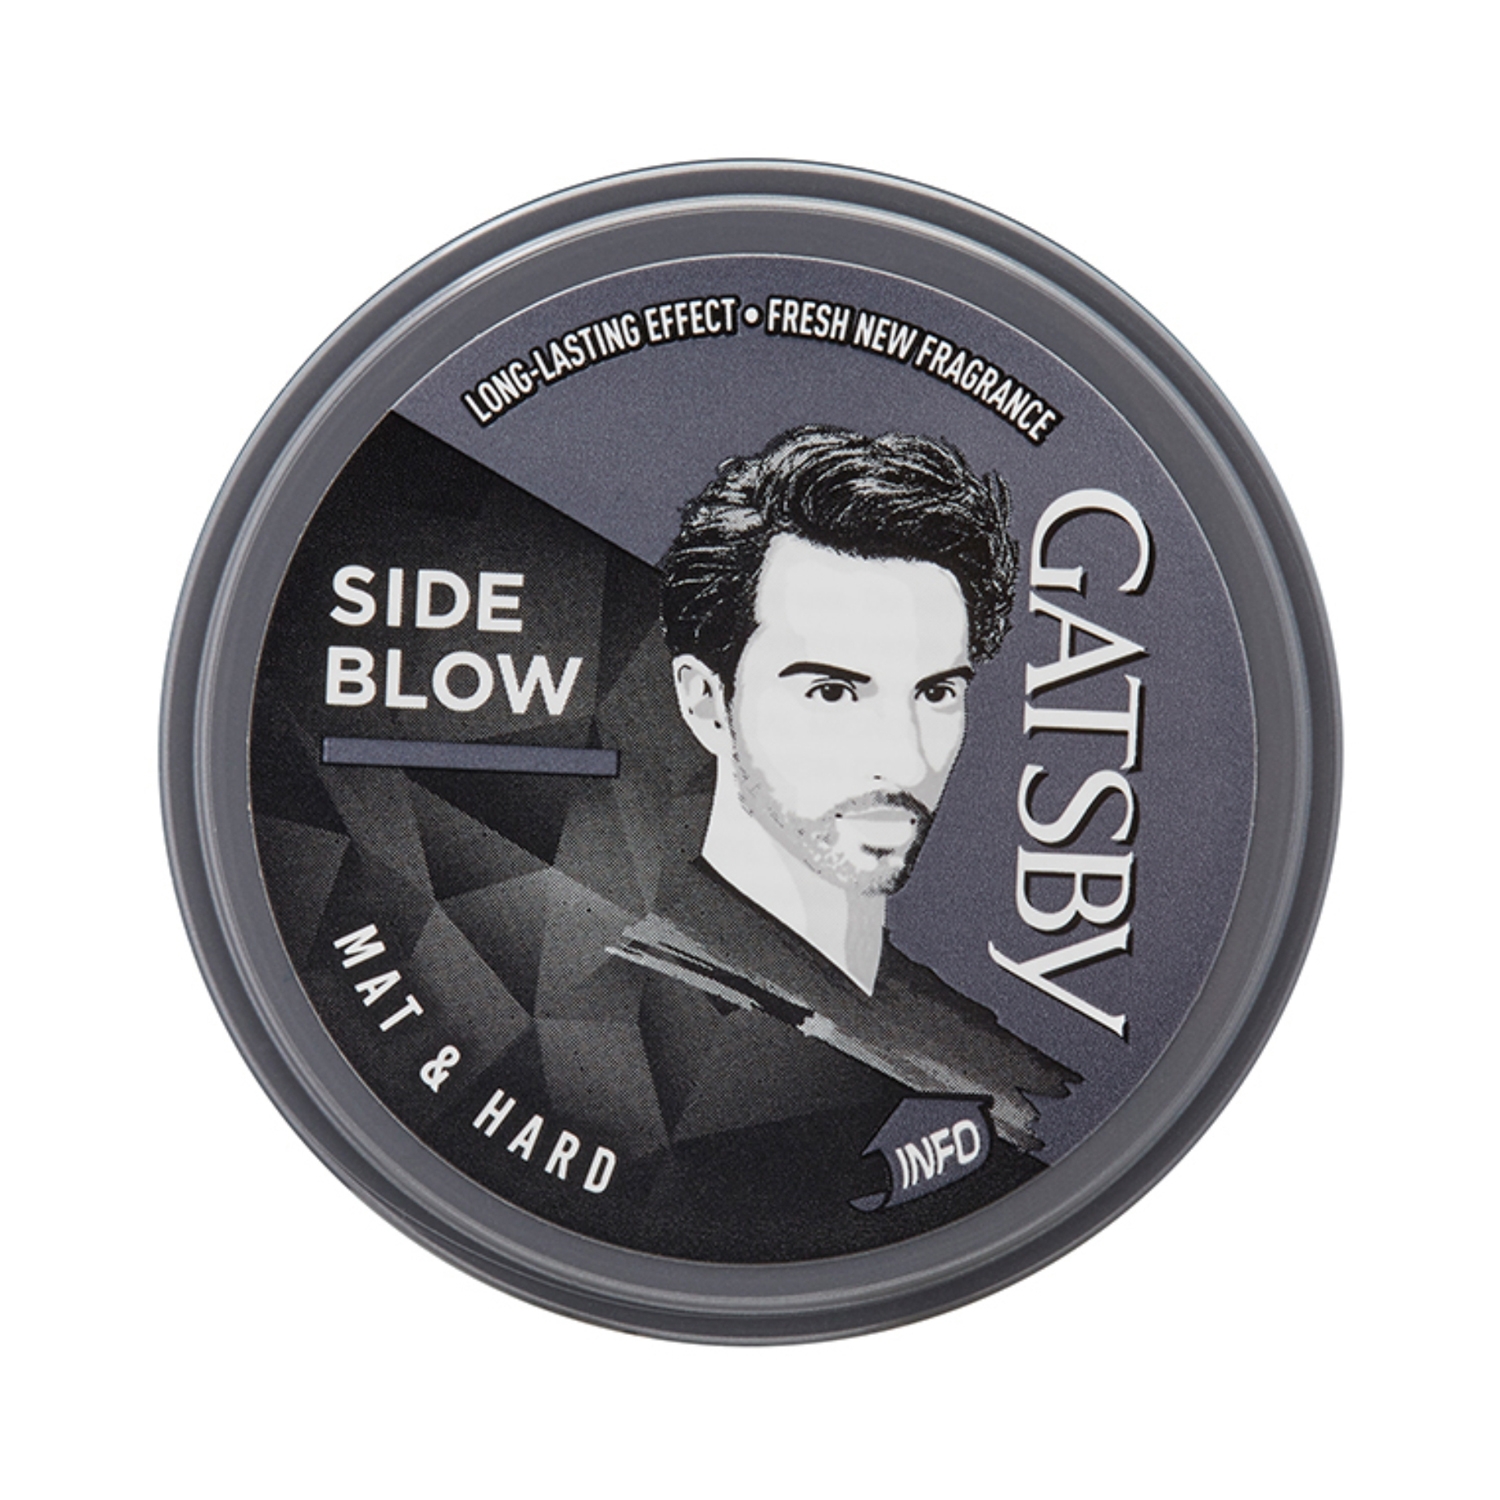 Gatsby | Gatsby Hair Styling Wax Mat & Hard (25g)